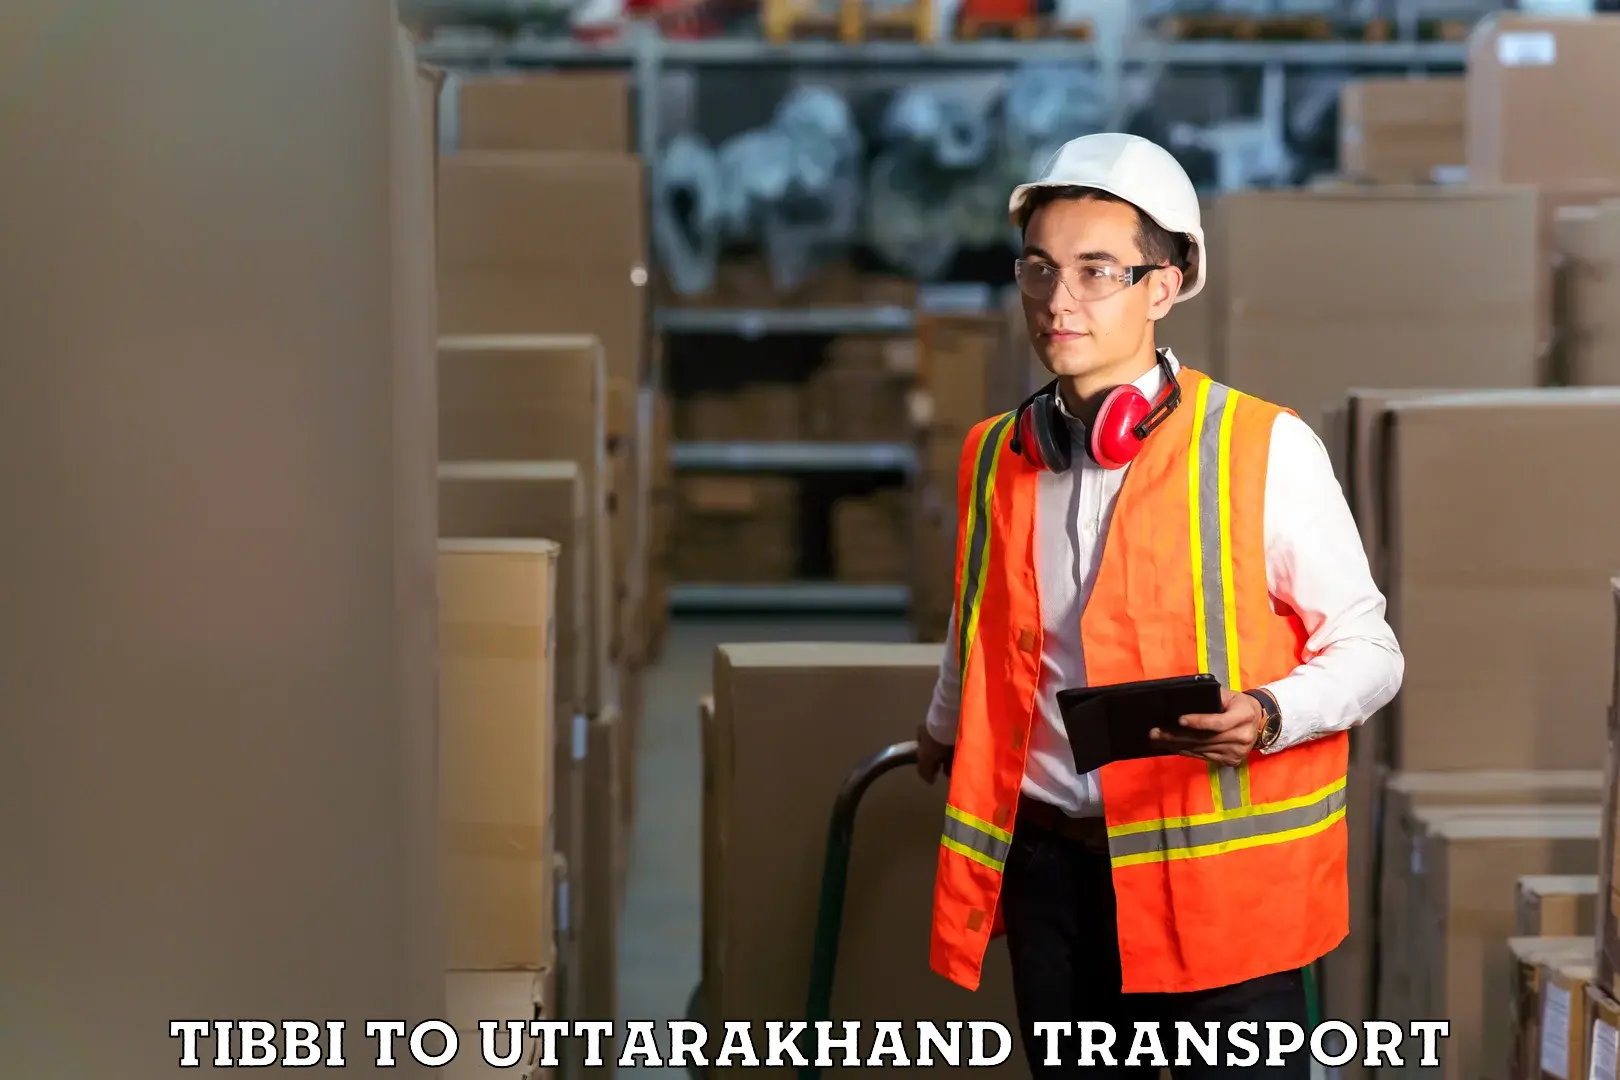 Shipping partner Tibbi to Uttarkashi